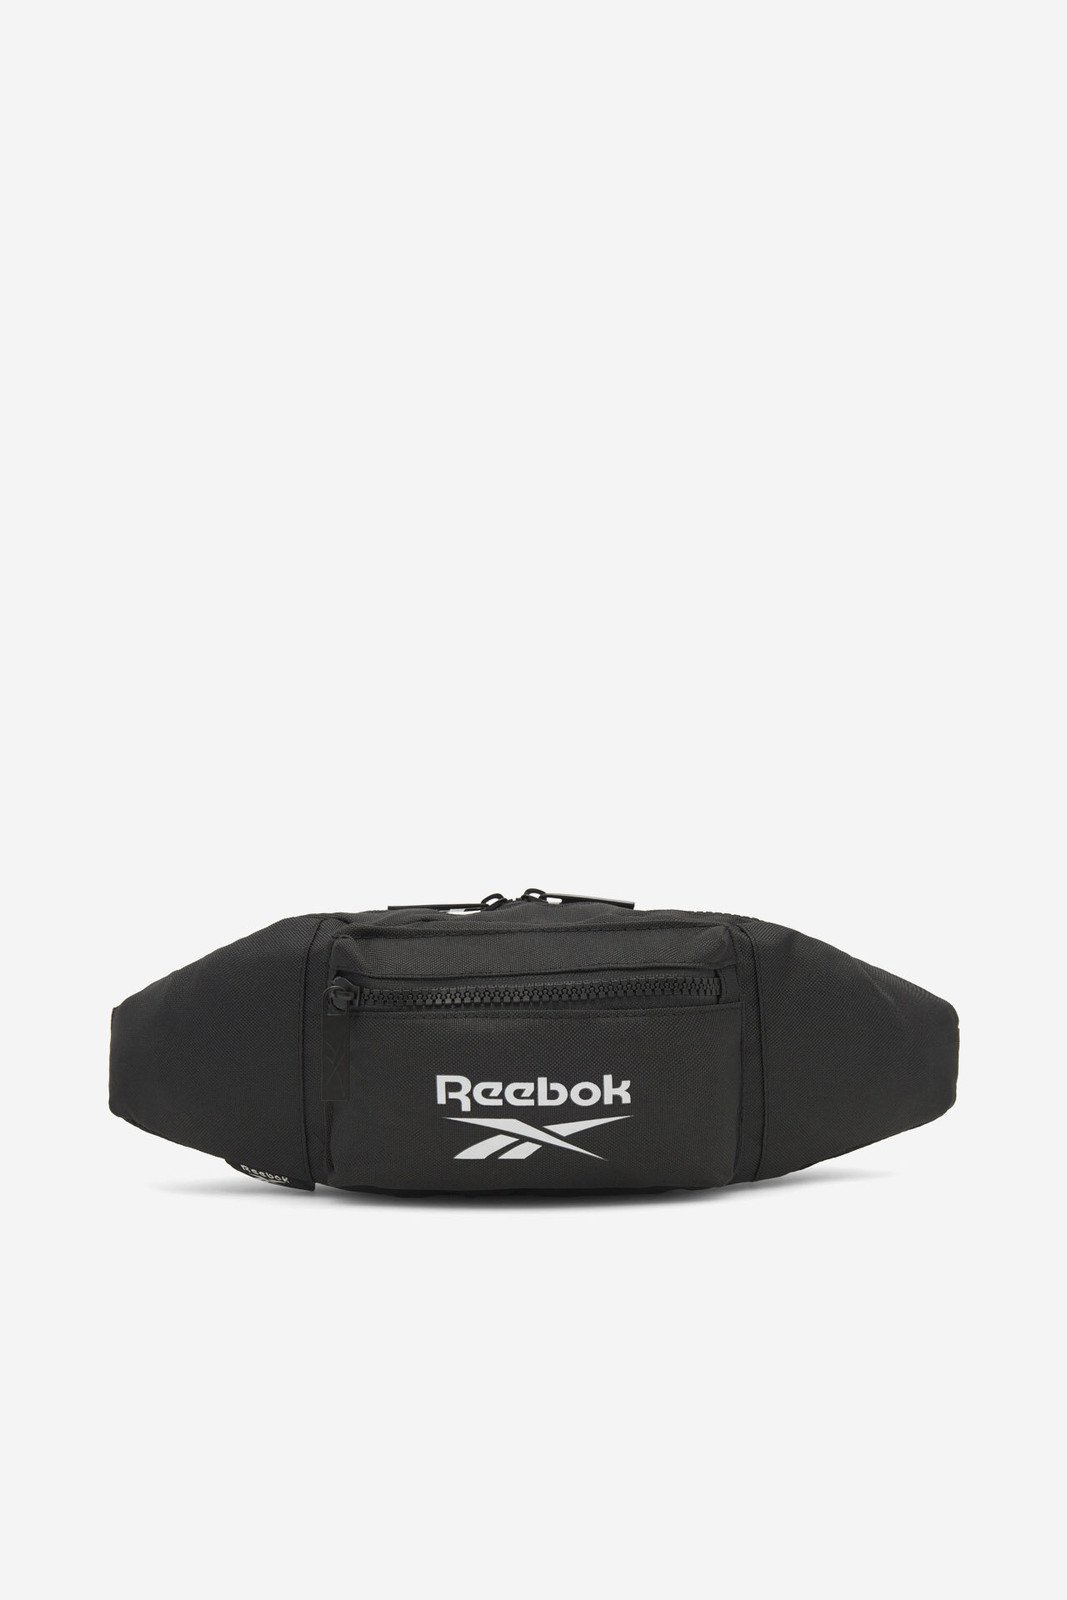 Batohy a tašky Reebok RBK-002-CCC-05